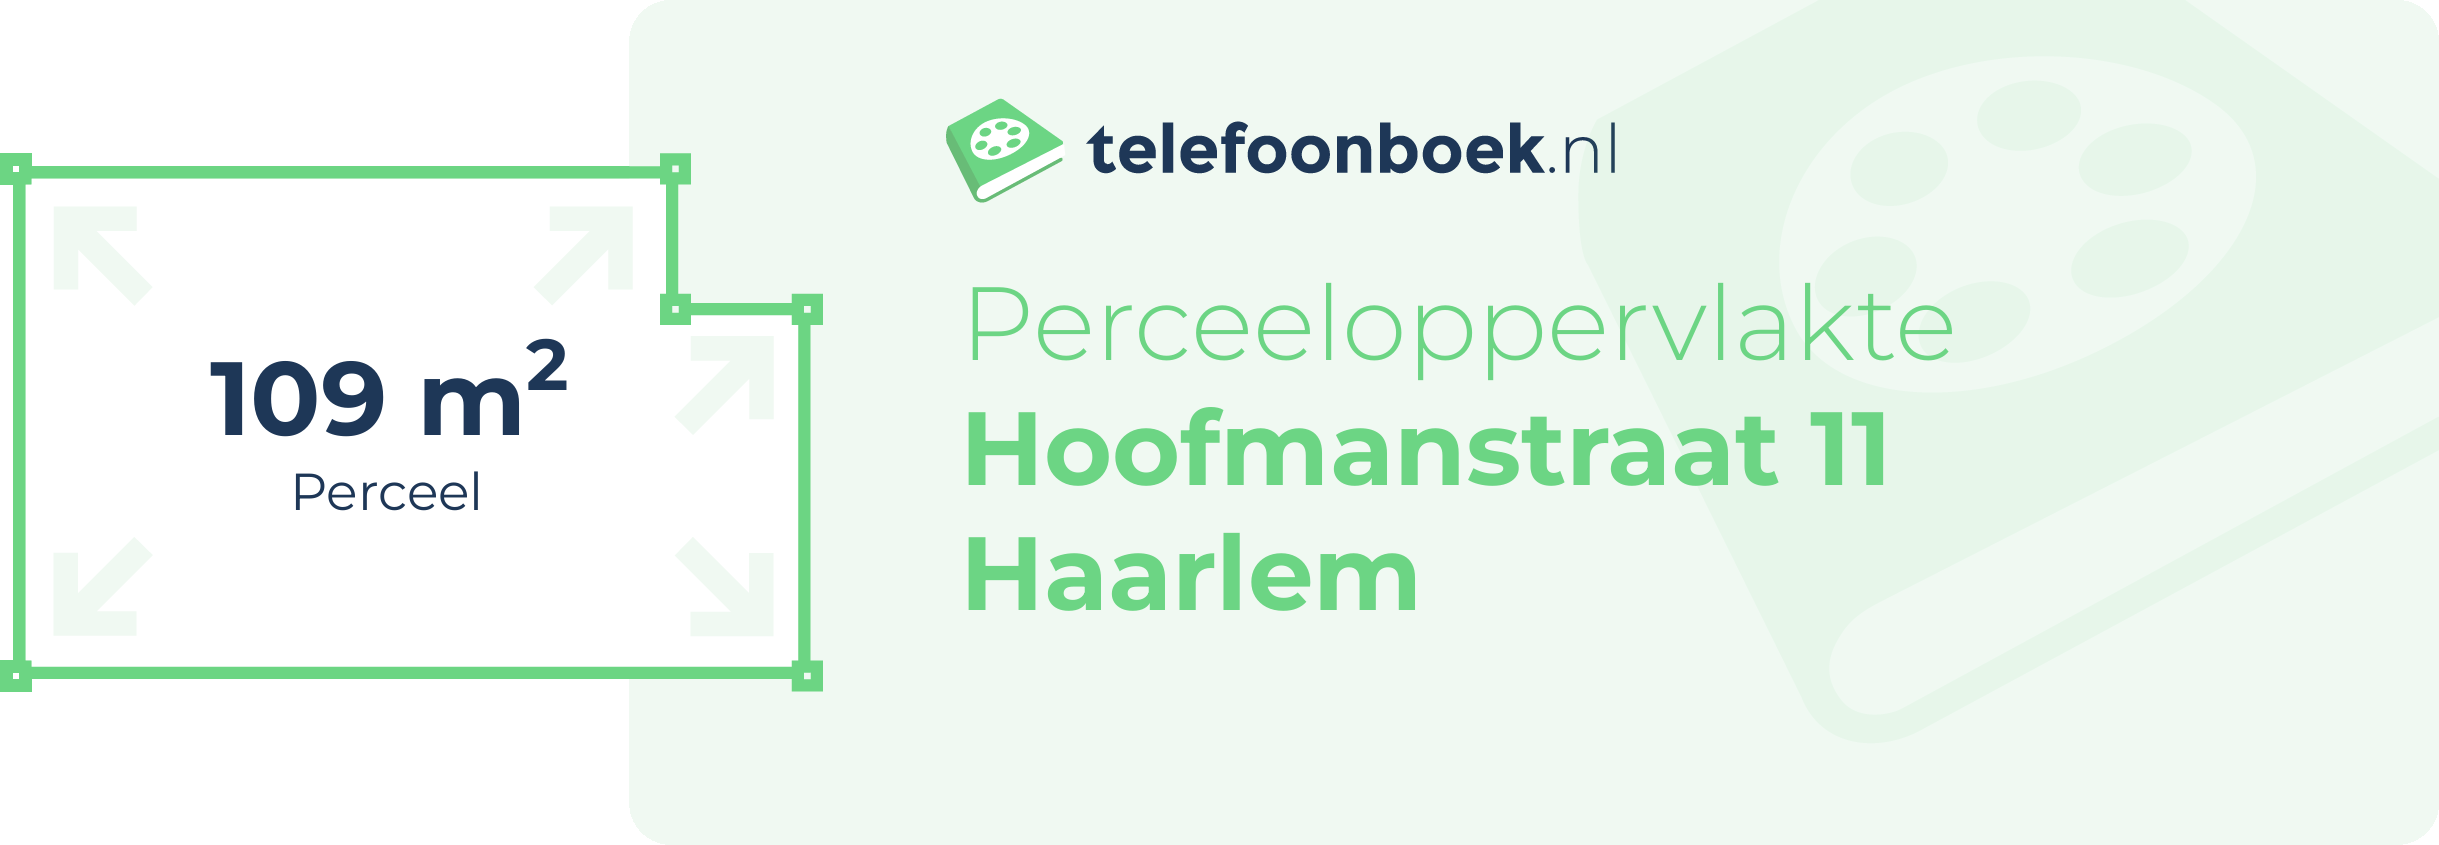 Perceeloppervlakte Hoofmanstraat 11 Haarlem